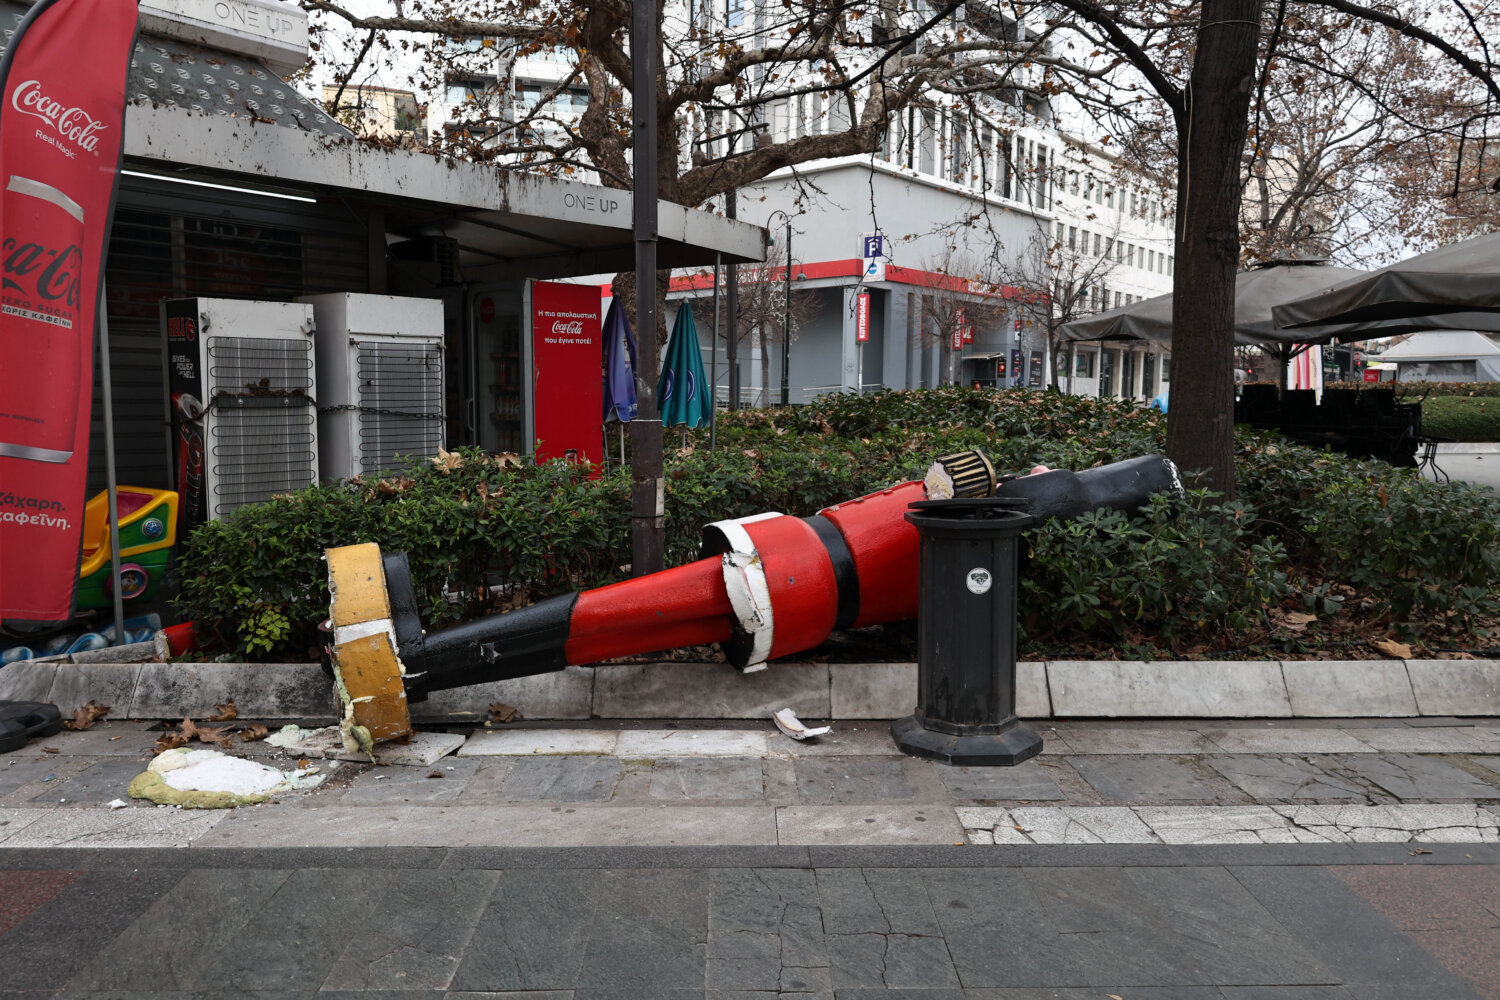 Λάρισα: Θεοφάνεια με εικόνες ντροπής σε κεντρική πλατεία – Κατέστρεψαν τον χριστουγεννιάτικο στολισμό